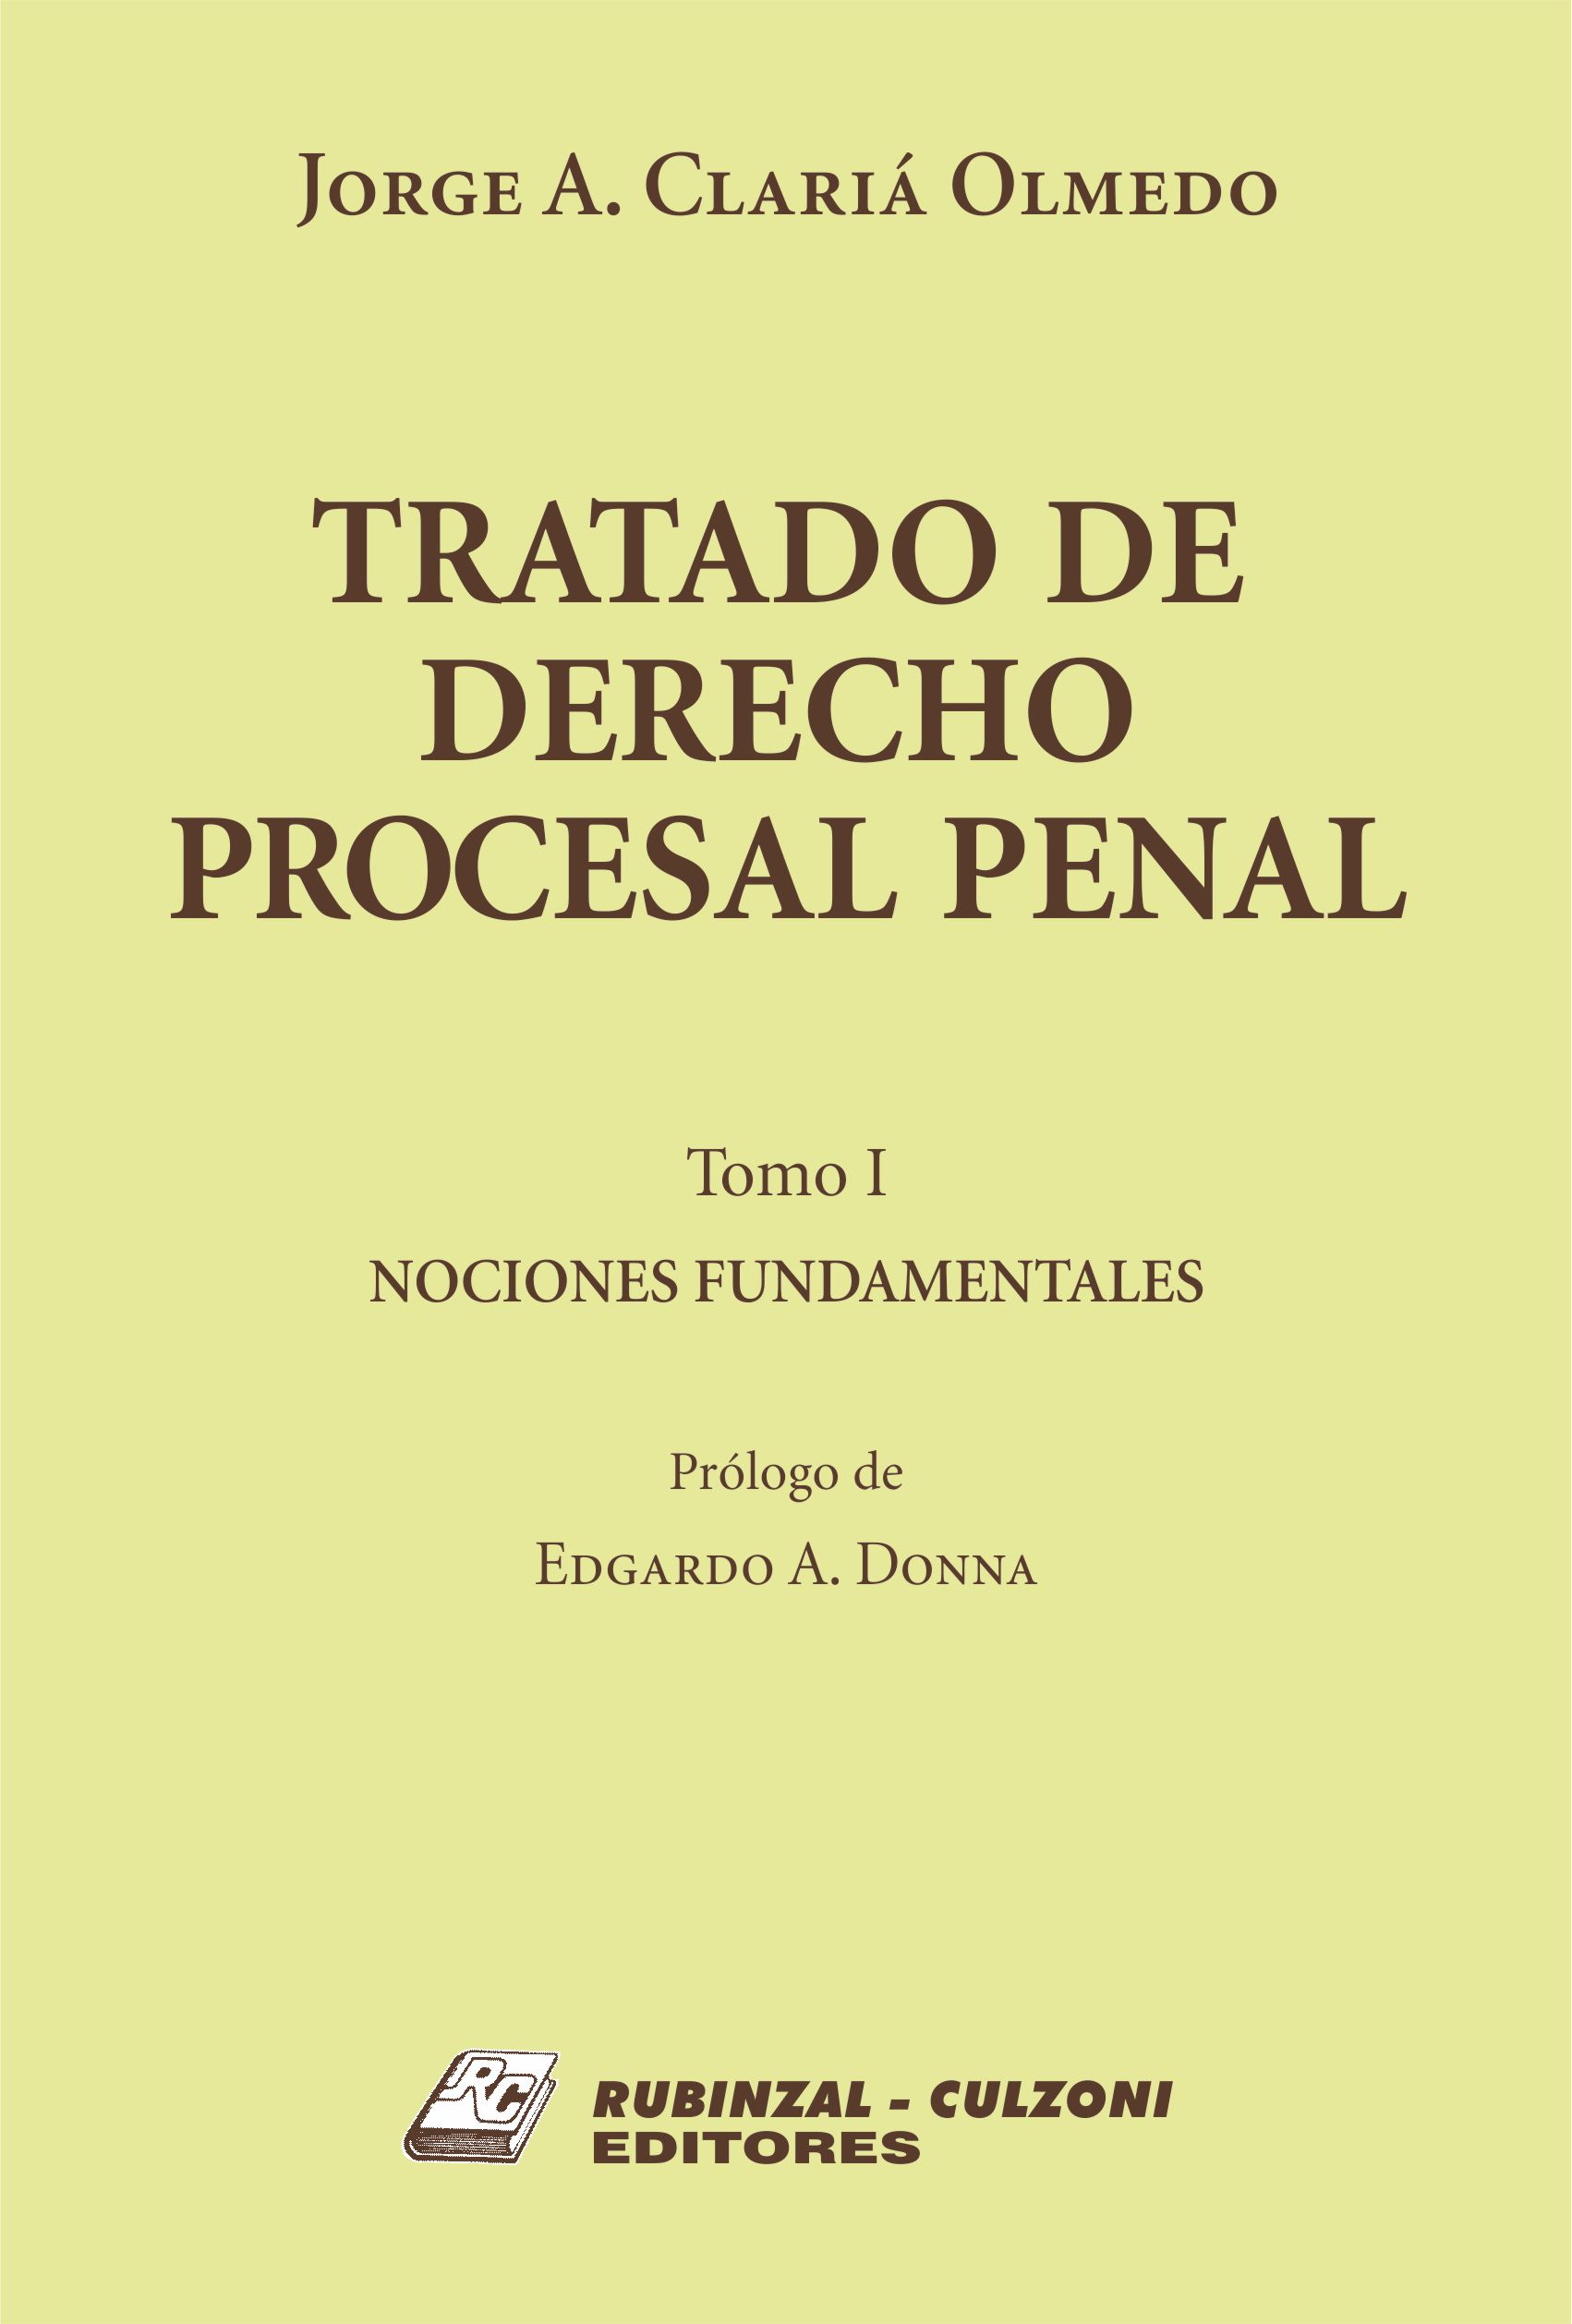 Tratado de Derecho Procesal Penal. - Tomo I. Nociones fundamentales.